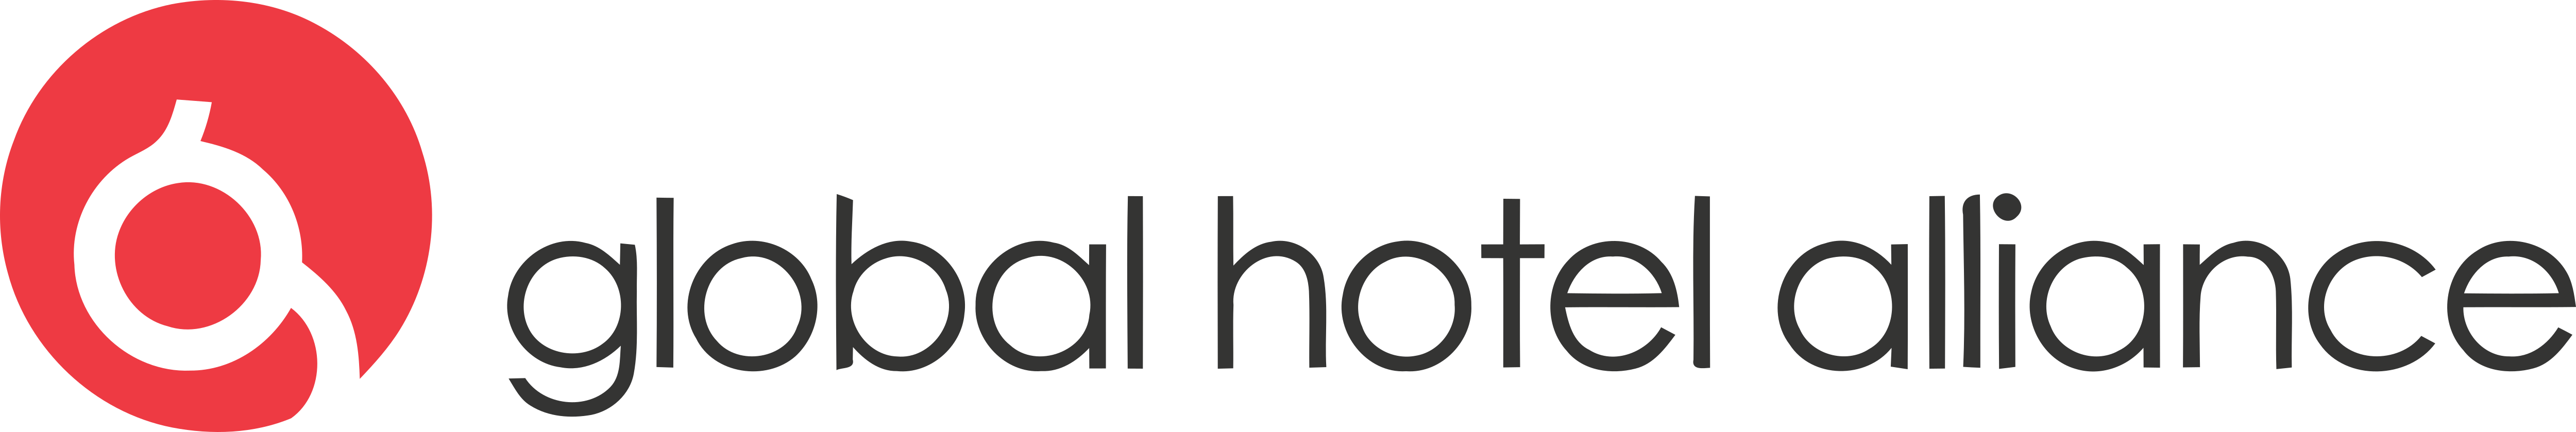 Global hotels. Глобальный гостиничный Альянс. Global Hotel. Альянс отель менеджмент логотип. Sartorius Альянс логотипы.